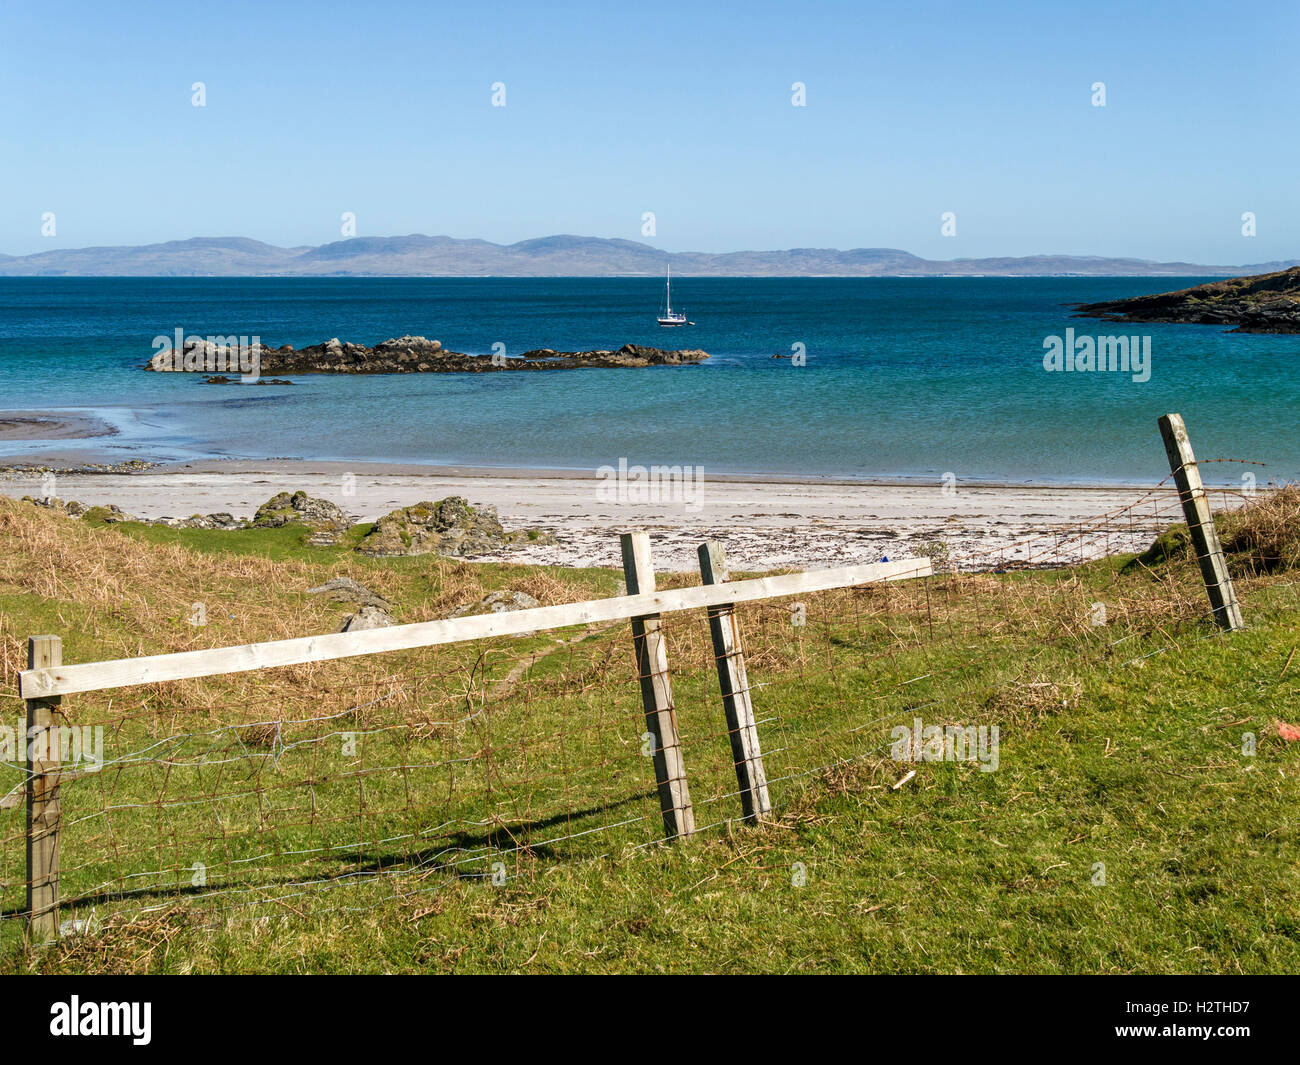 Queens Bay Beach, Insel Colonsay, mit Yacht, Loch Staosnaig und Isle of Jura jenseits, Schottland, Großbritannien. Stockfoto